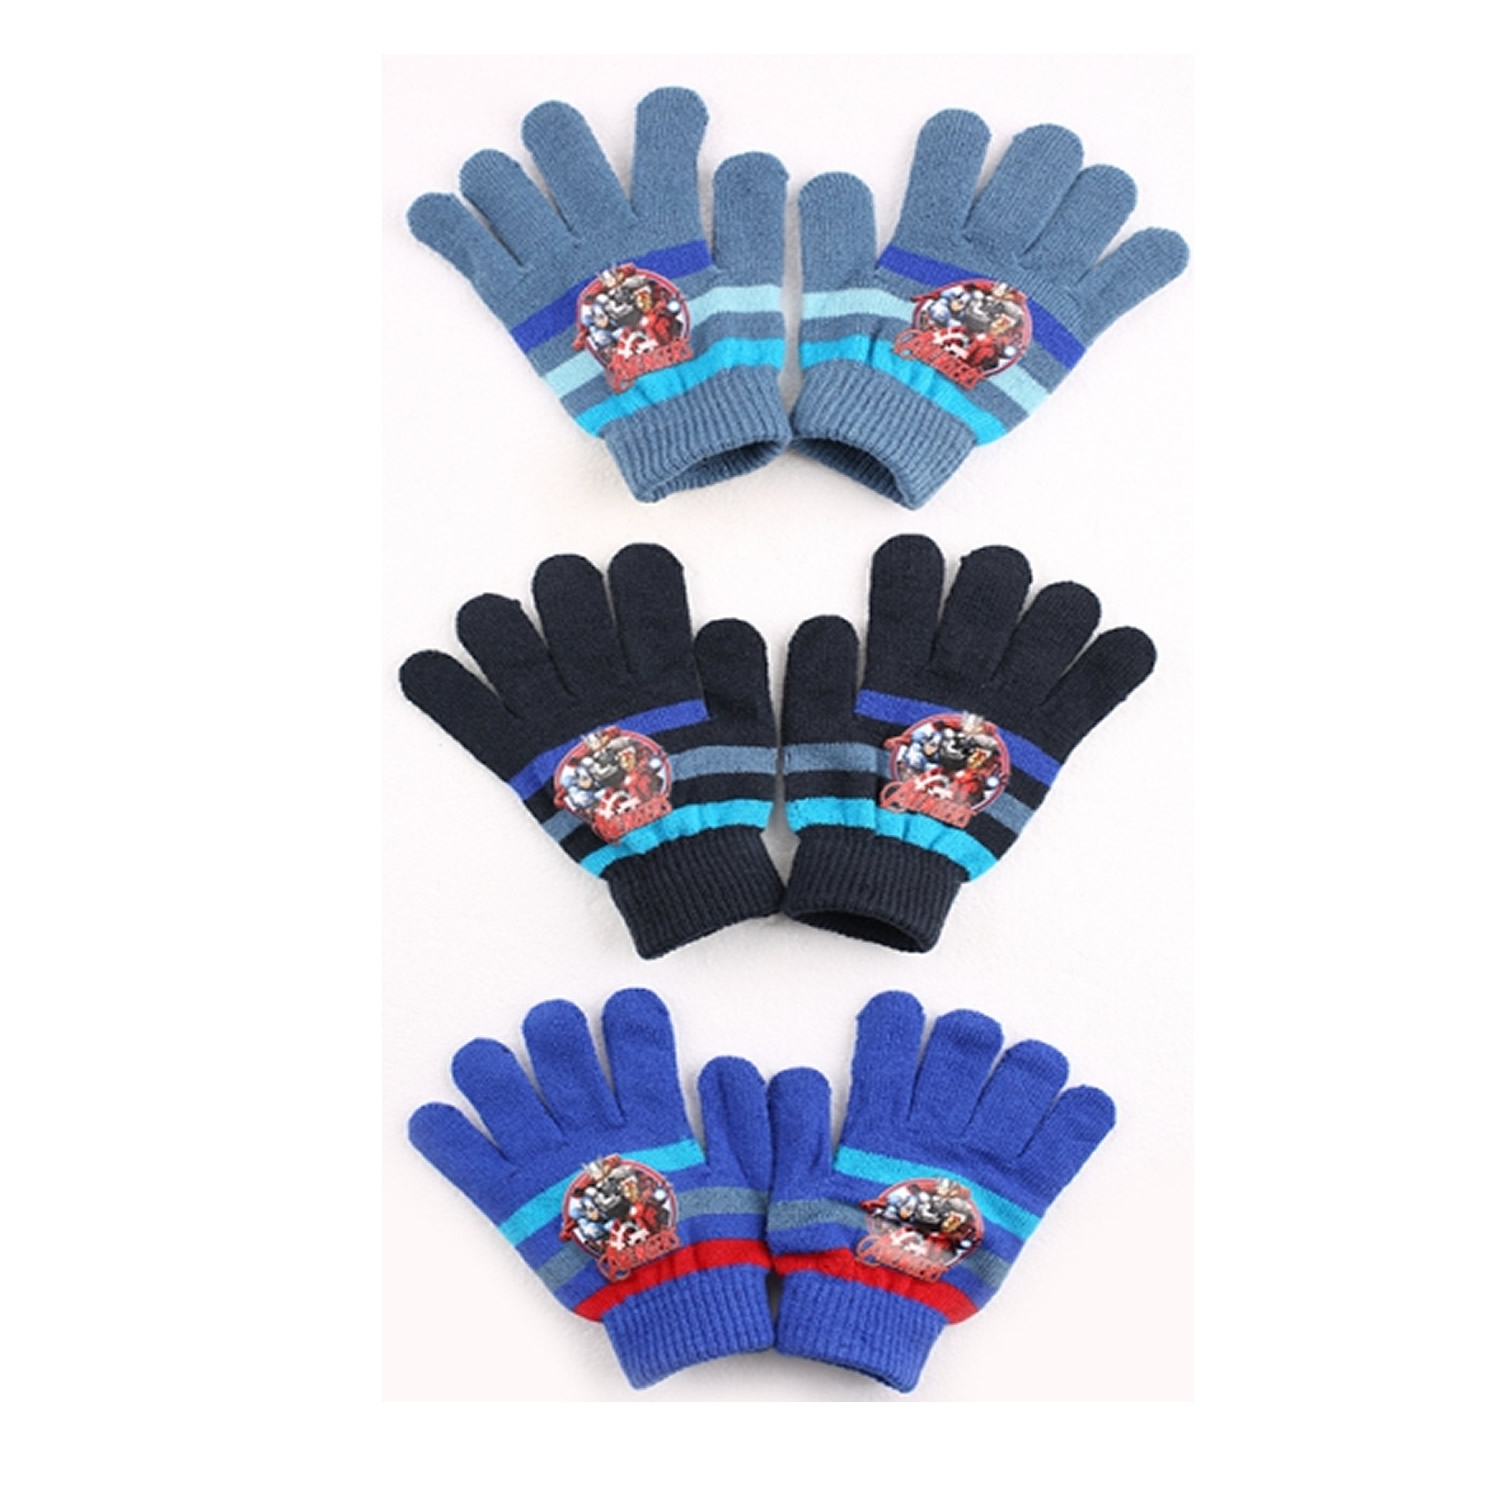 Marvel 'Avengers' Knitted Assorted Winter Gloves [1 random pair of gloves]